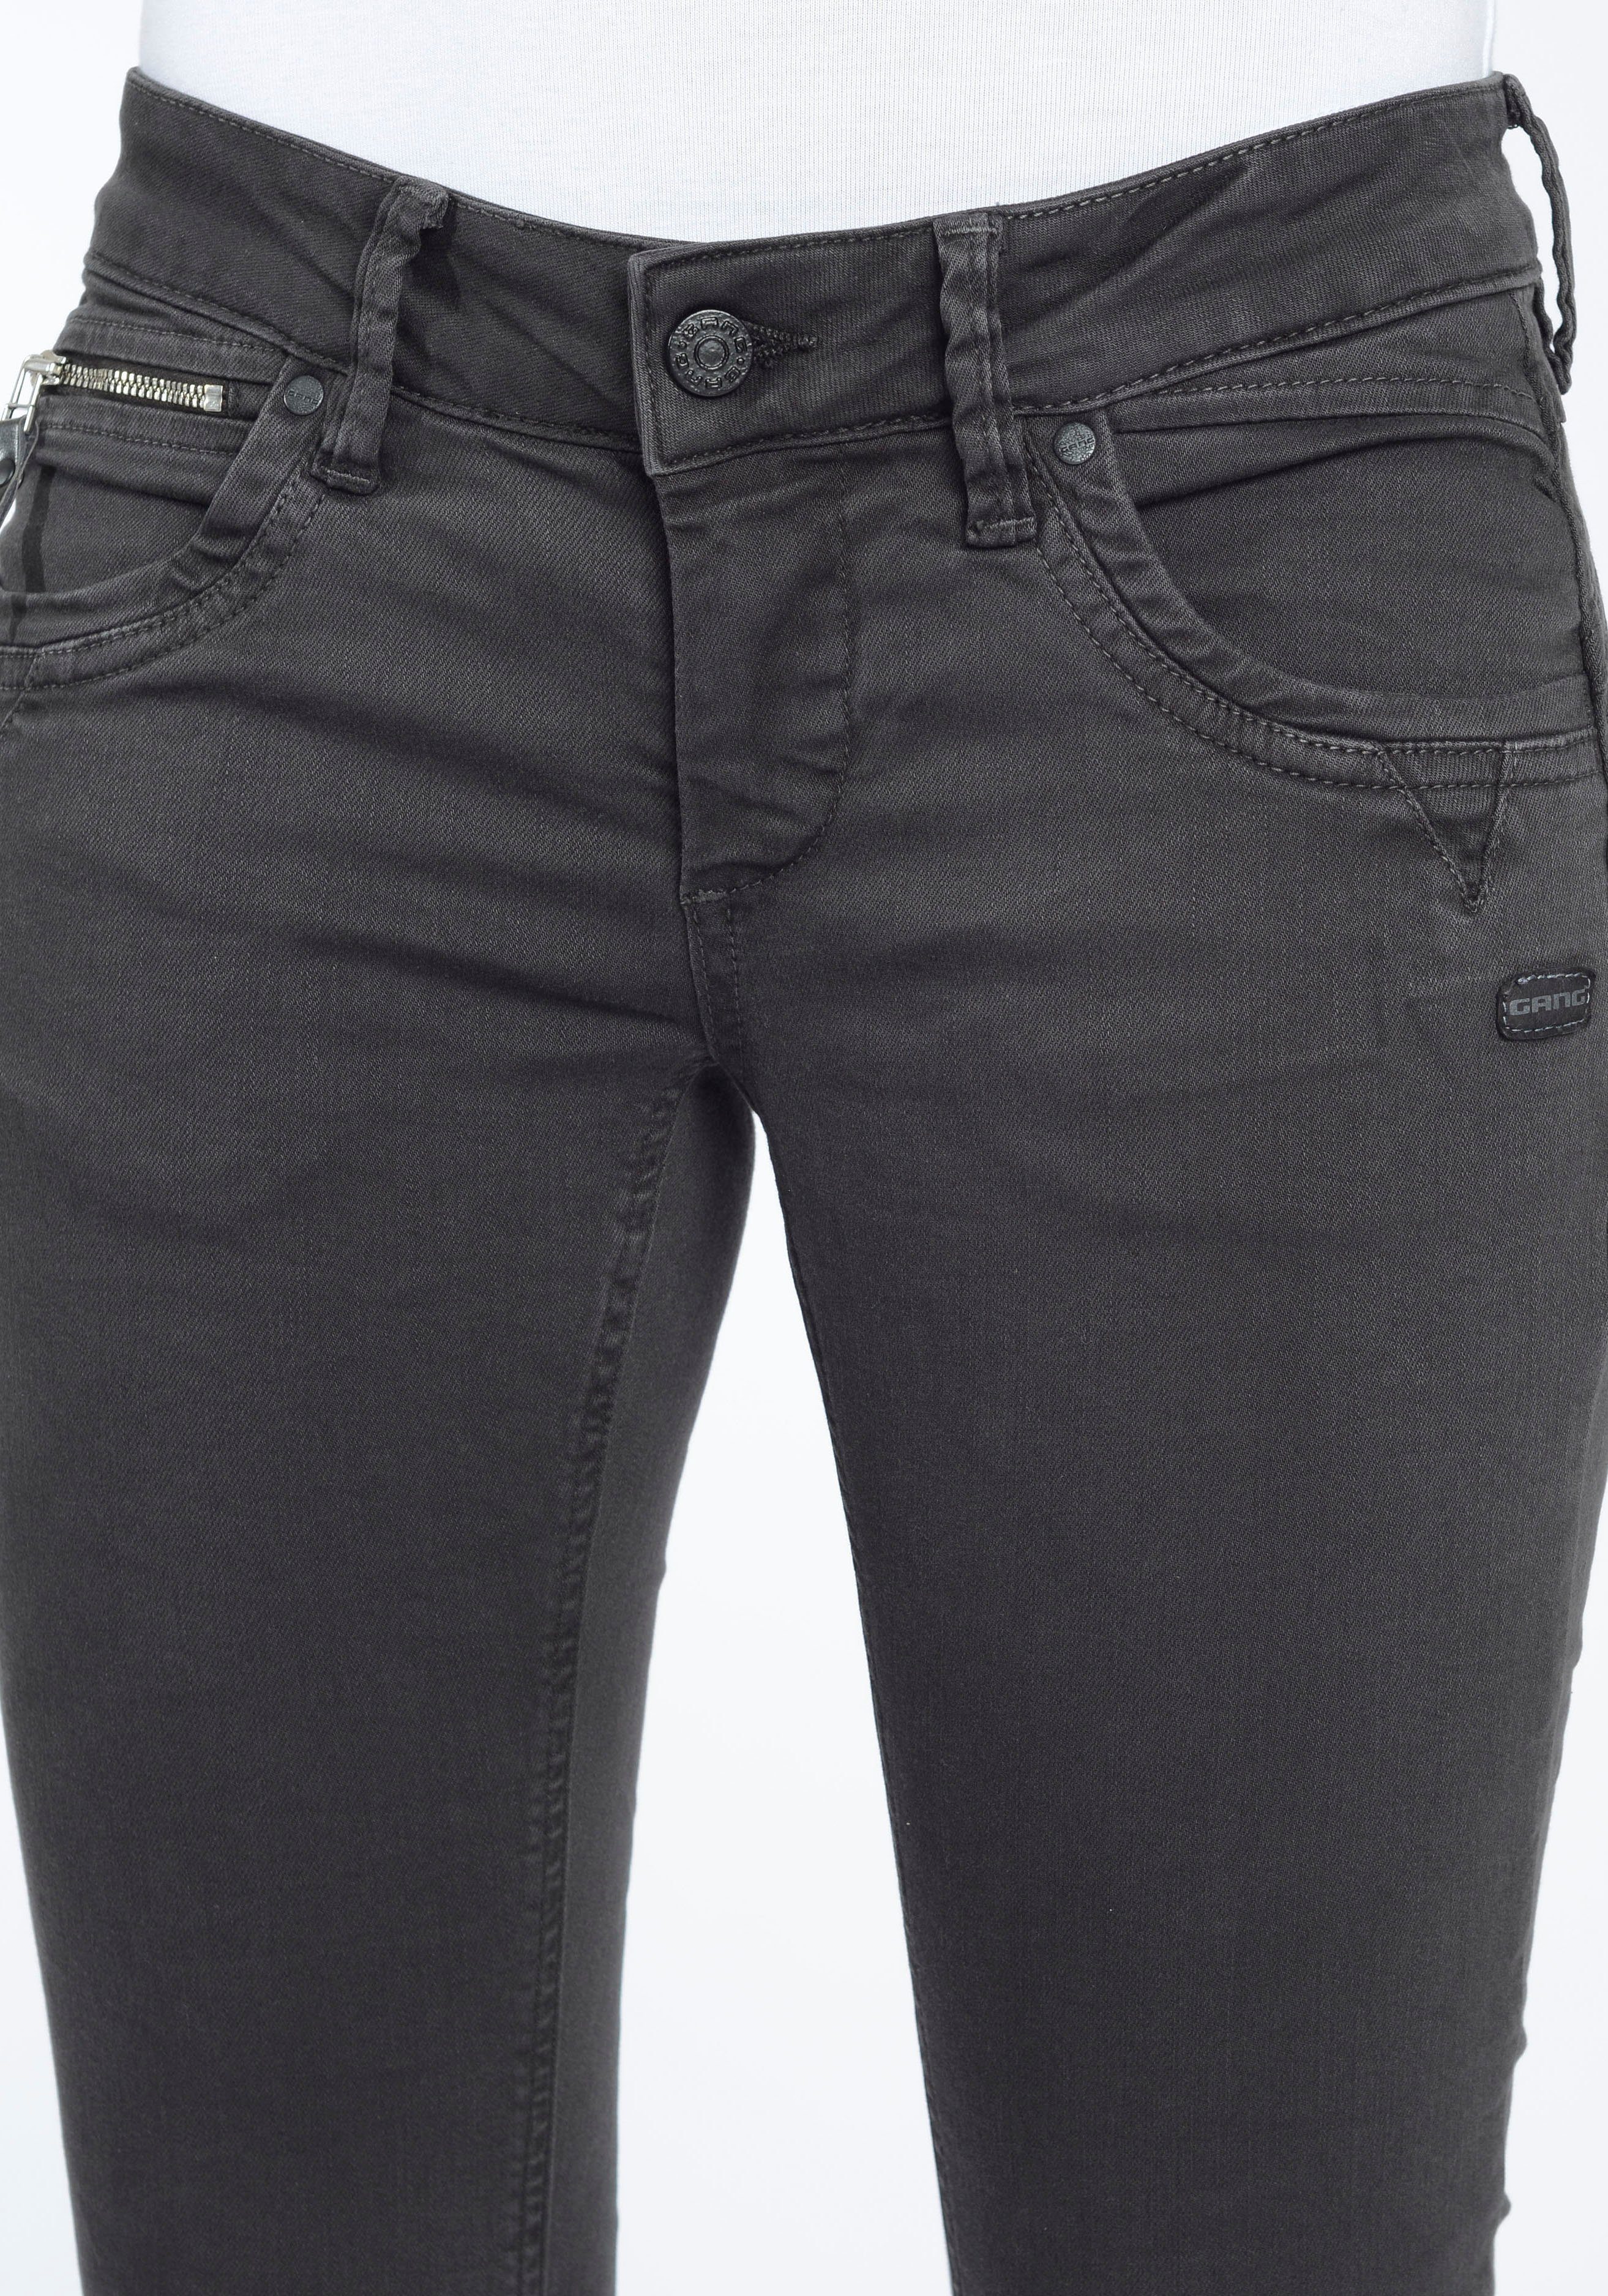 Stretch-Denim 94NIKITA Skinny-fit-Jeans perfekte Passform GANG raven durch